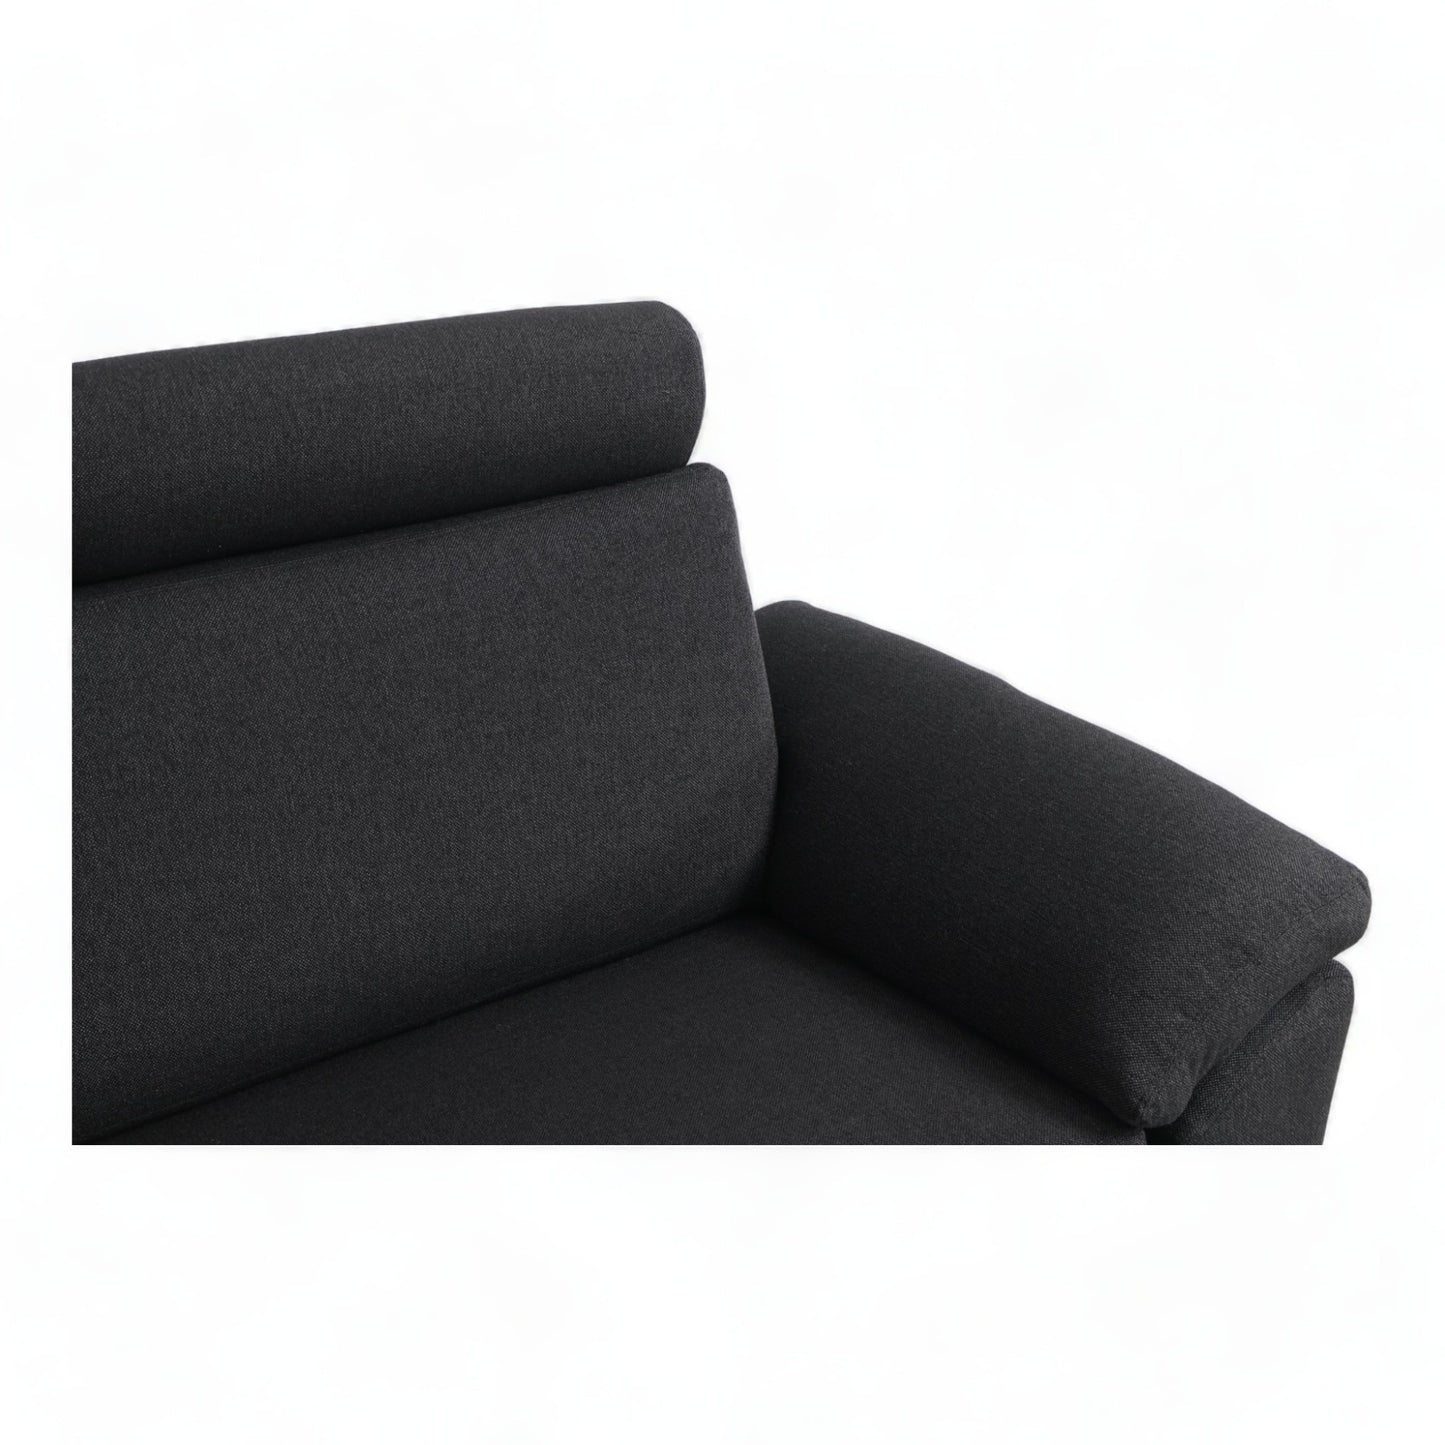 Nyrenset | Hjort Knudsen 3-seter sofa